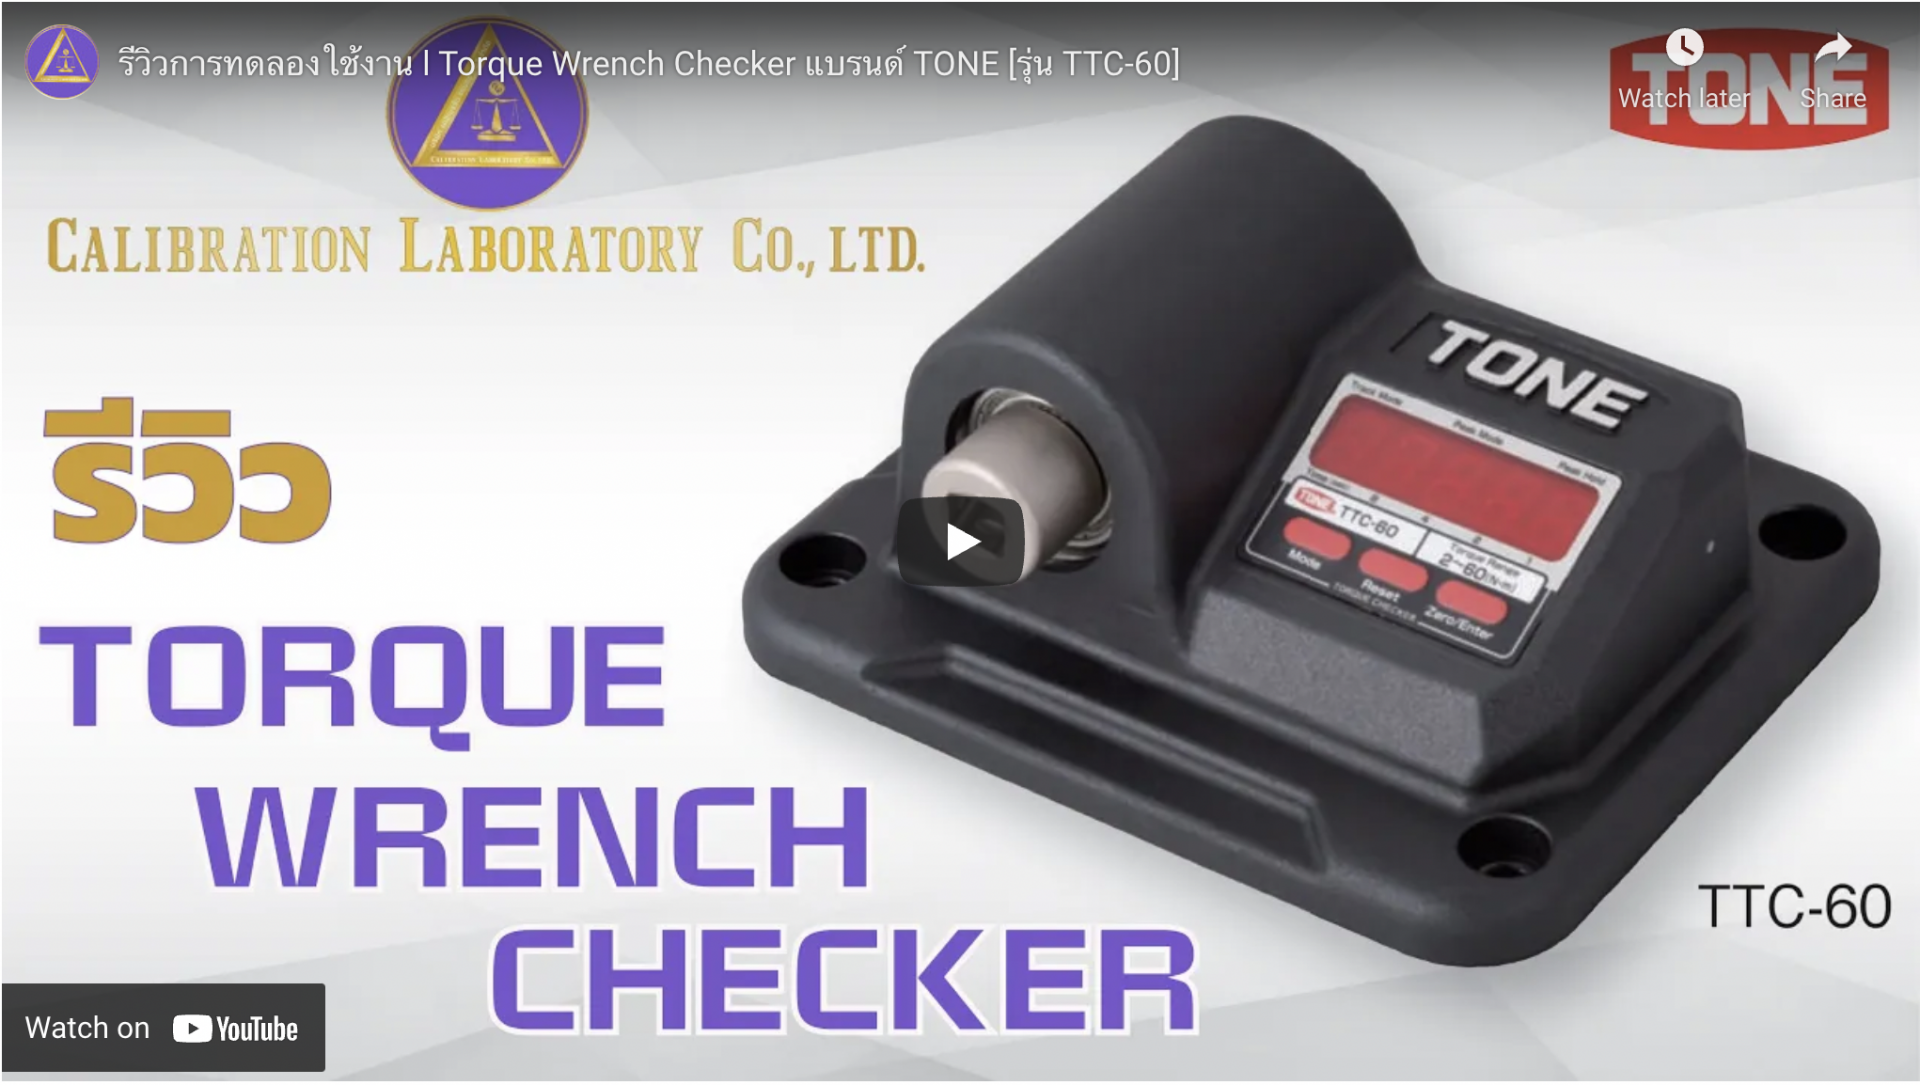 ปก รีวิว torque wrench checker TONE ซื้อ ขาย สอบเทียบเครื่องมือวัด _Calibration Lab_01